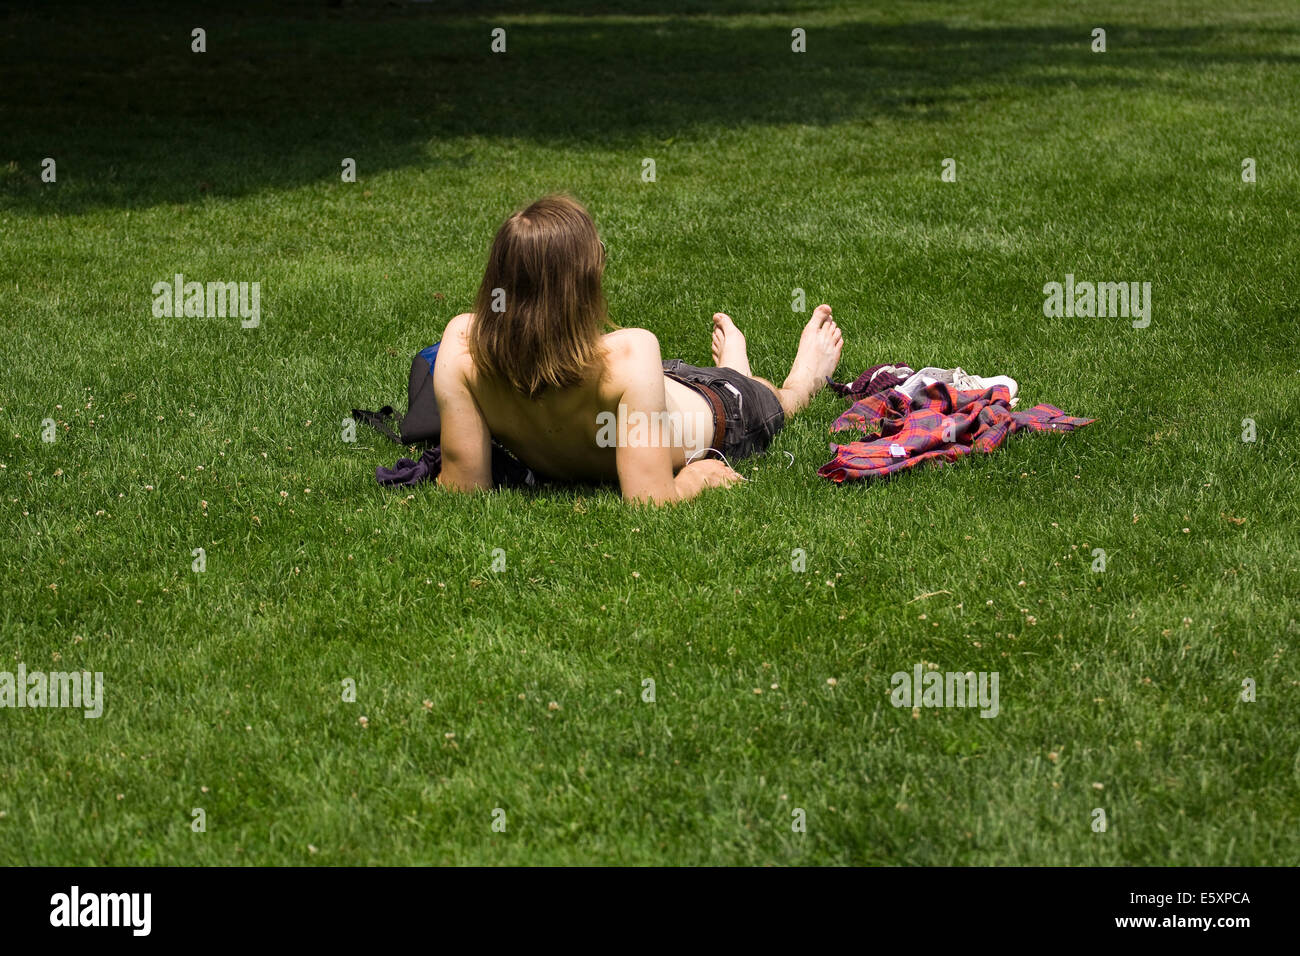 Un uomo con i capelli lunghi si trova in erba verde senza una camicia in una giornata di sole Foto Stock